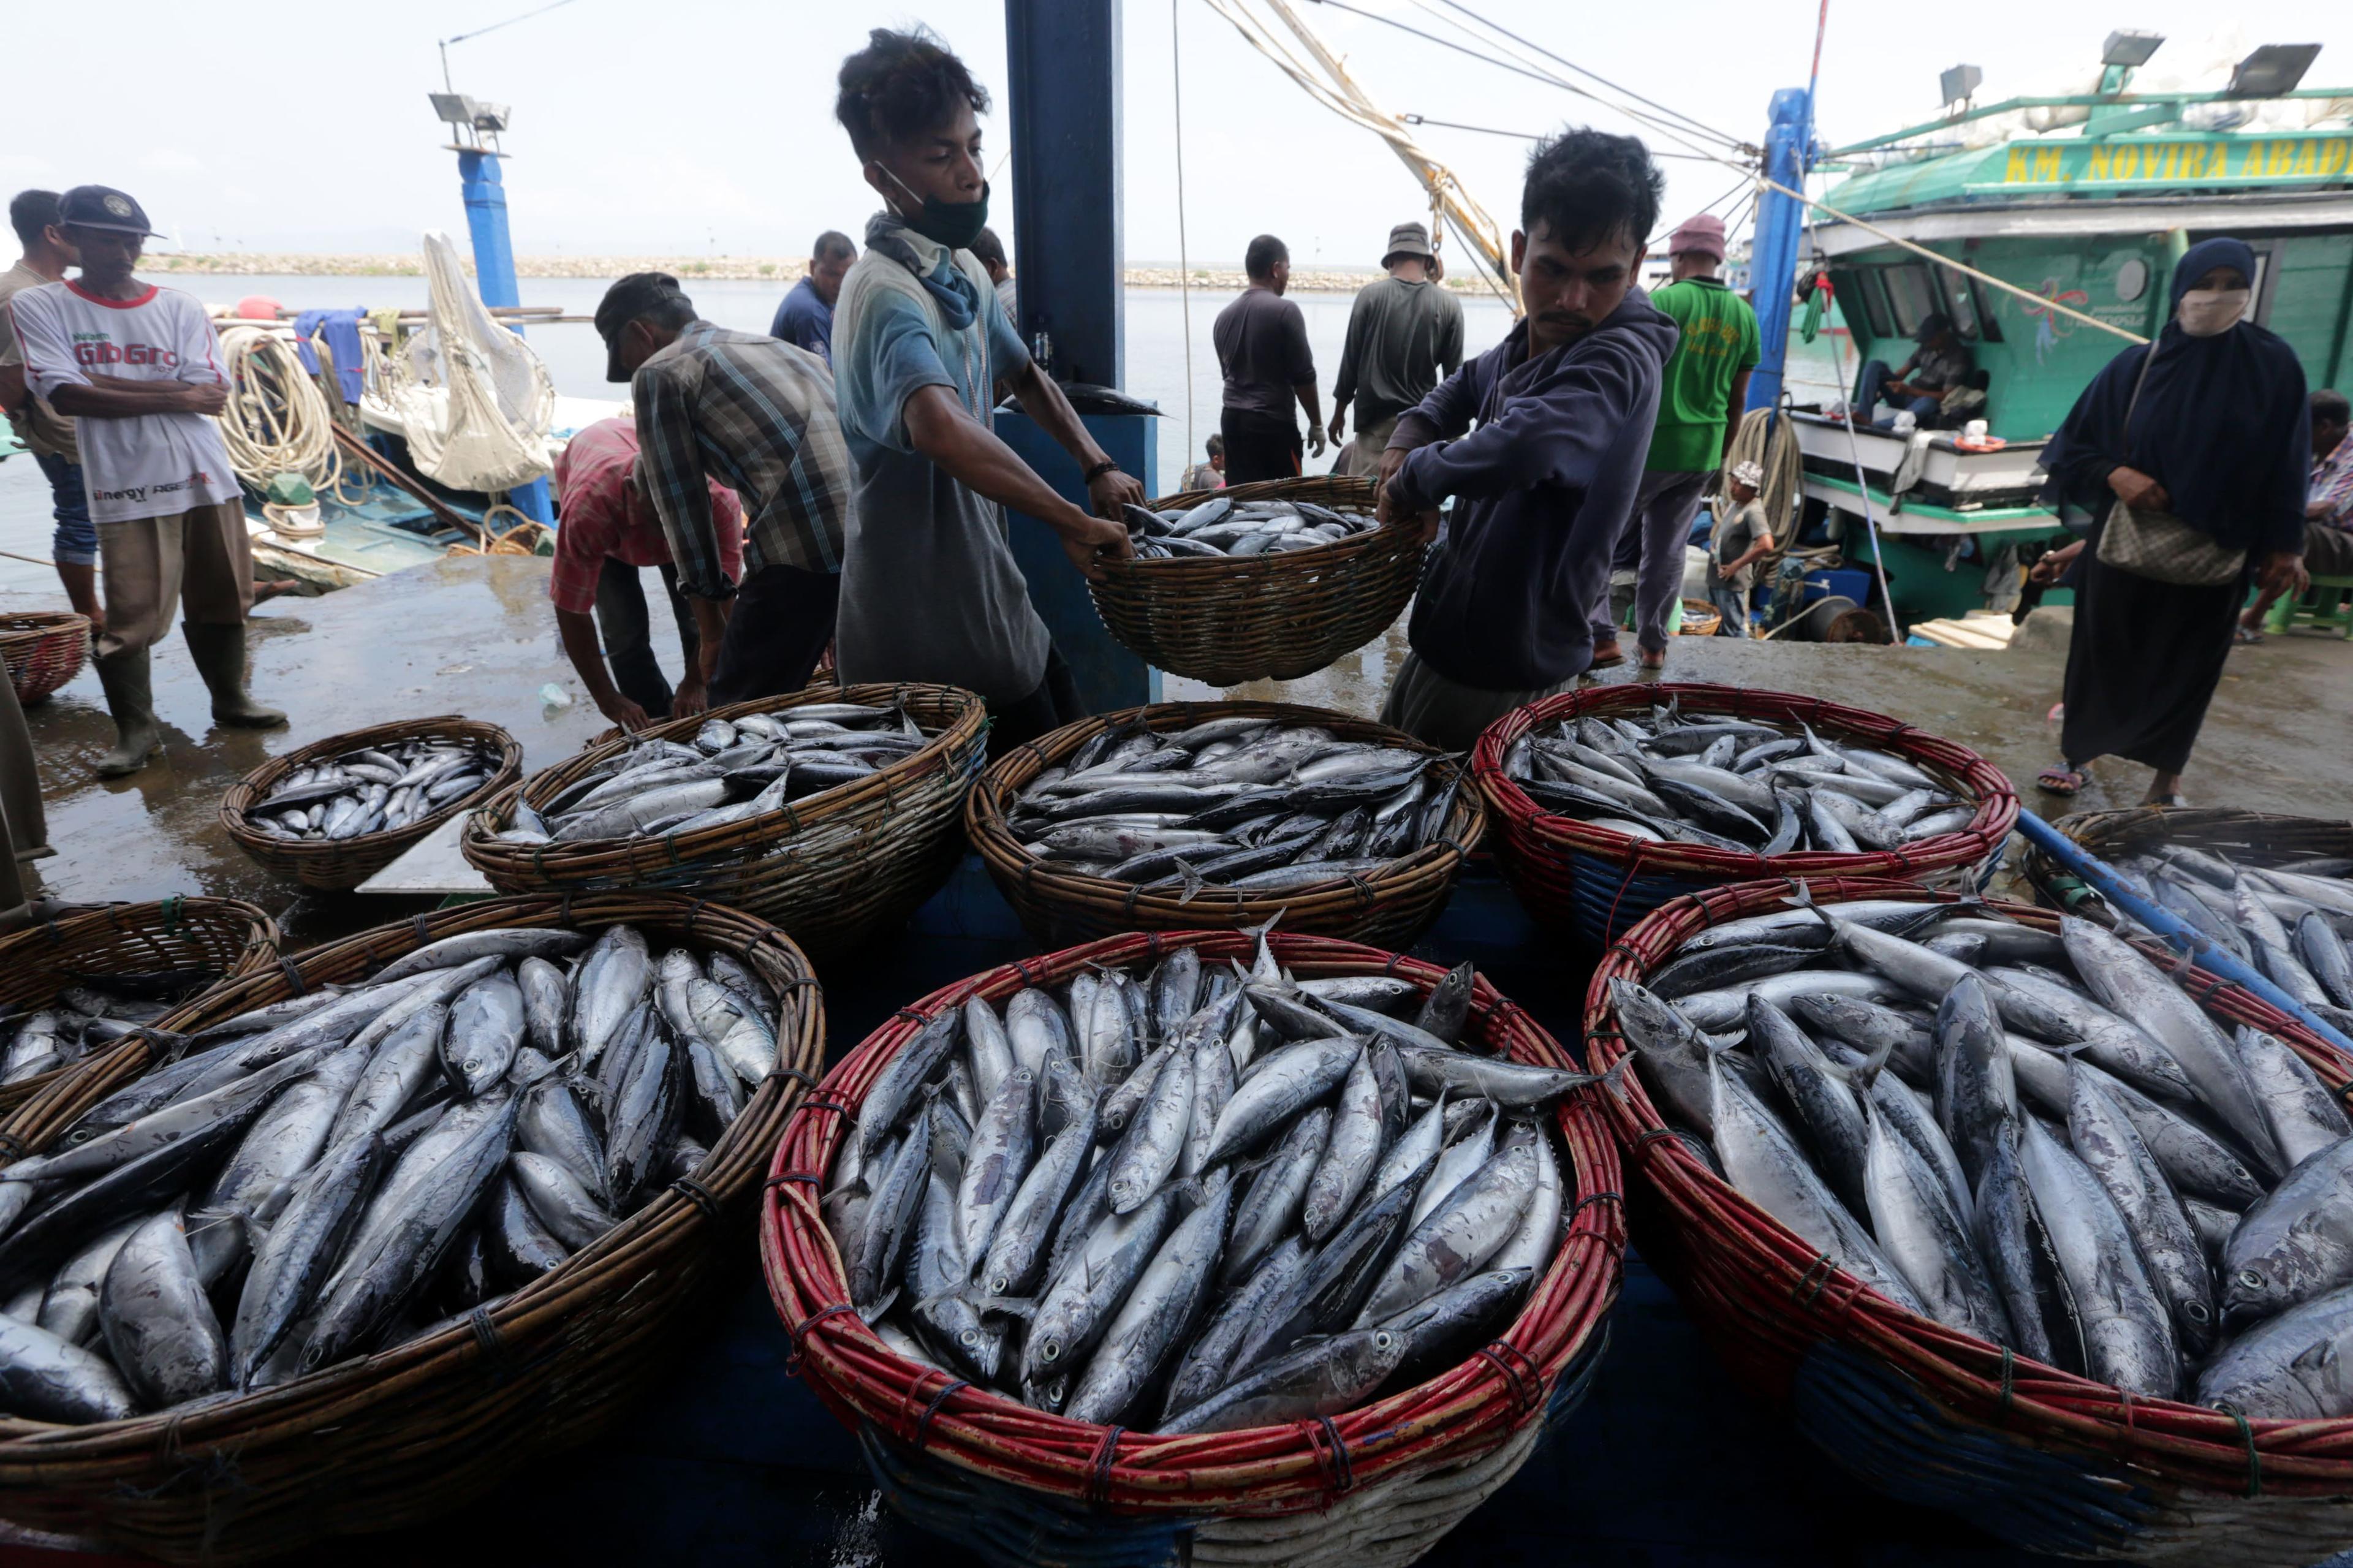 Nelayan Kecil Sulit Akses BBM, Pemerintah Luncurkan “Solusi”